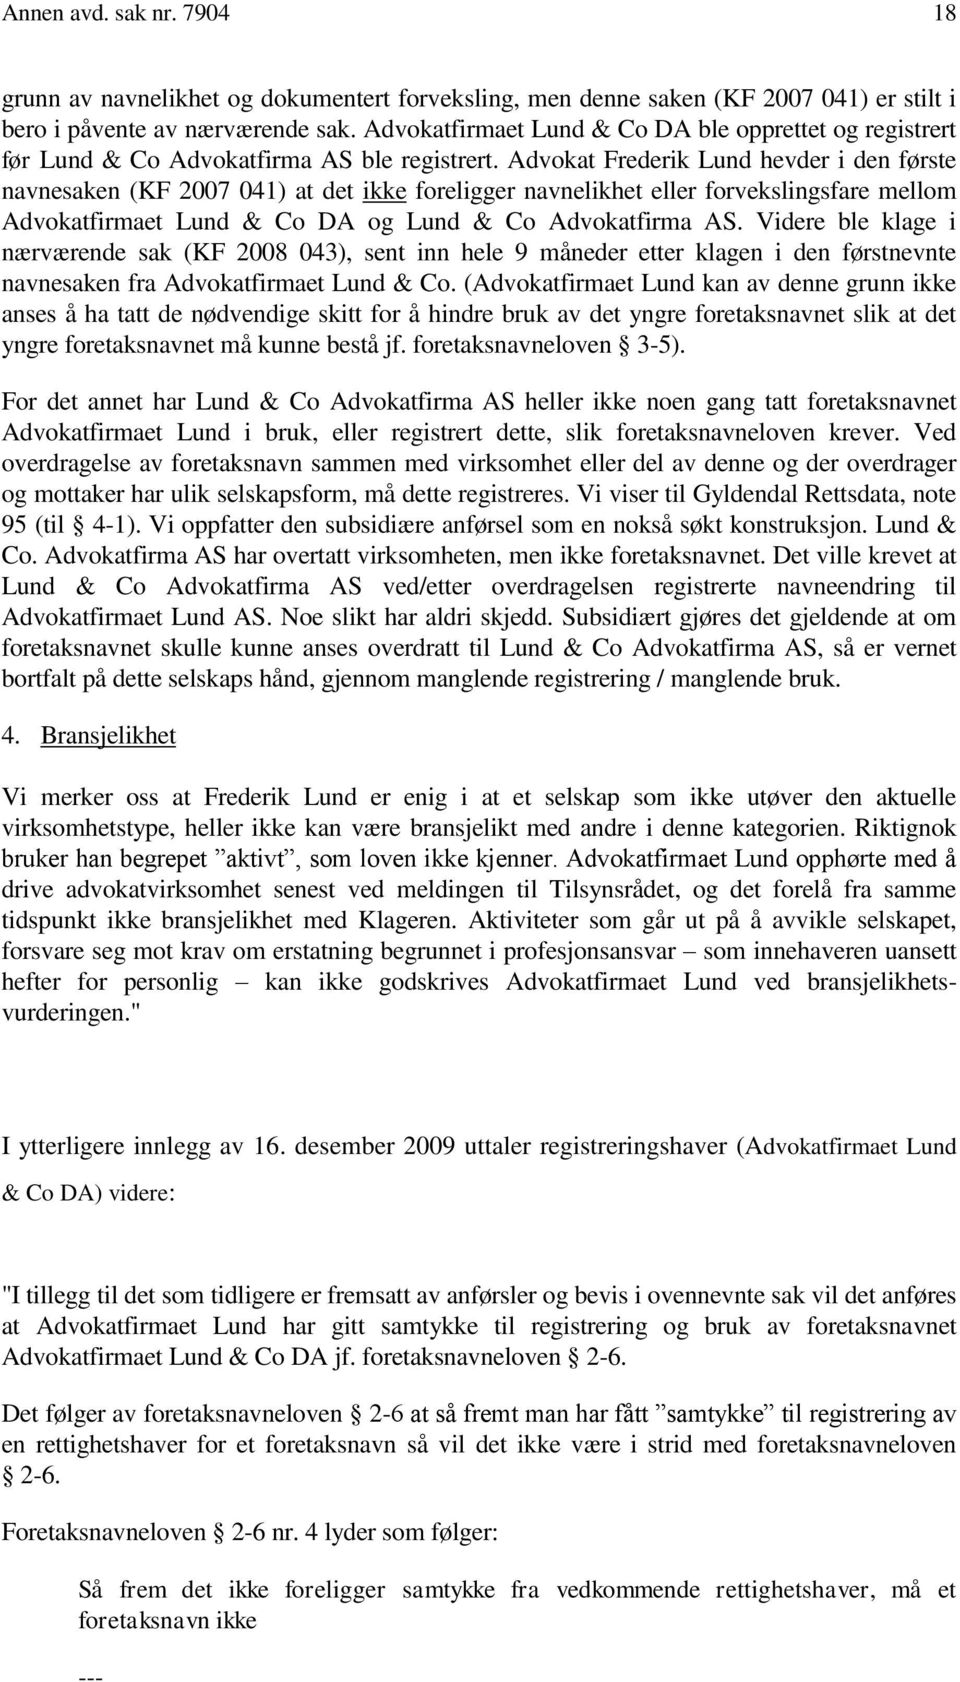 Advokat Frederik Lund hevder i den første navnesaken (KF 2007 041) at det ikke foreligger navnelikhet eller forvekslingsfare mellom Advokatfirmaet Lund & Co DA og Lund & Co Advokatfirma AS.